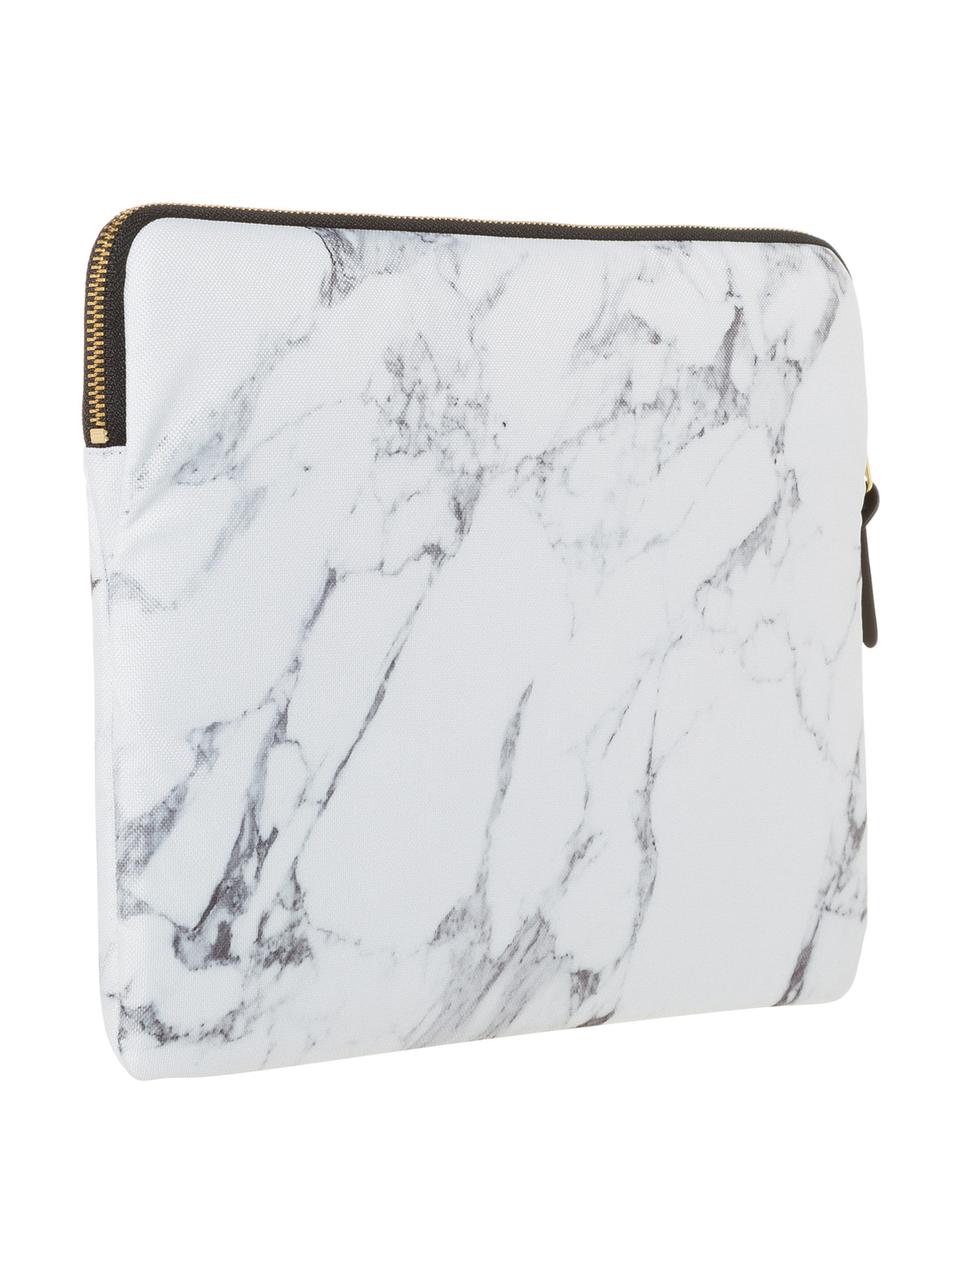 Laptophülle White Marble für MacBook Pro 13 Zoll, Laptoptasche: Weiss, marmoriert Aufdruck: Schwarz mit goldfarbener Schrift, 34 x 25 cm